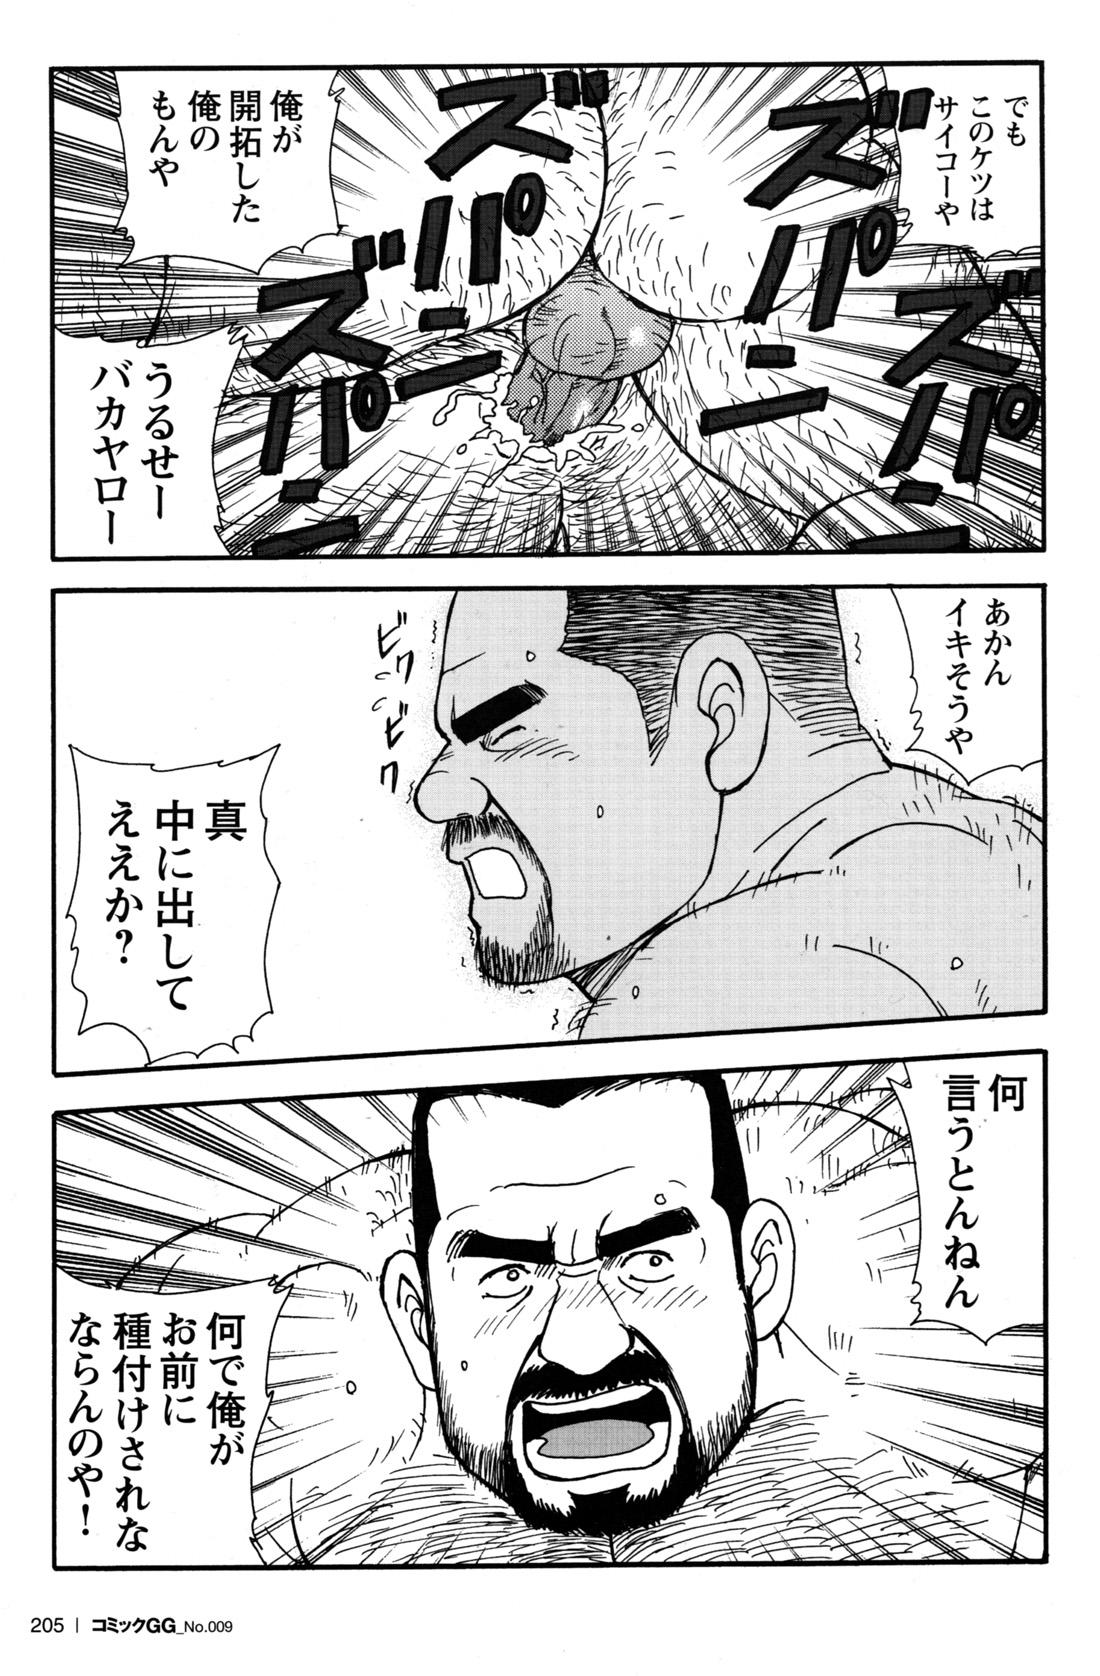 Comic G-men Gaho No.09 Gacchibi Zeme 188